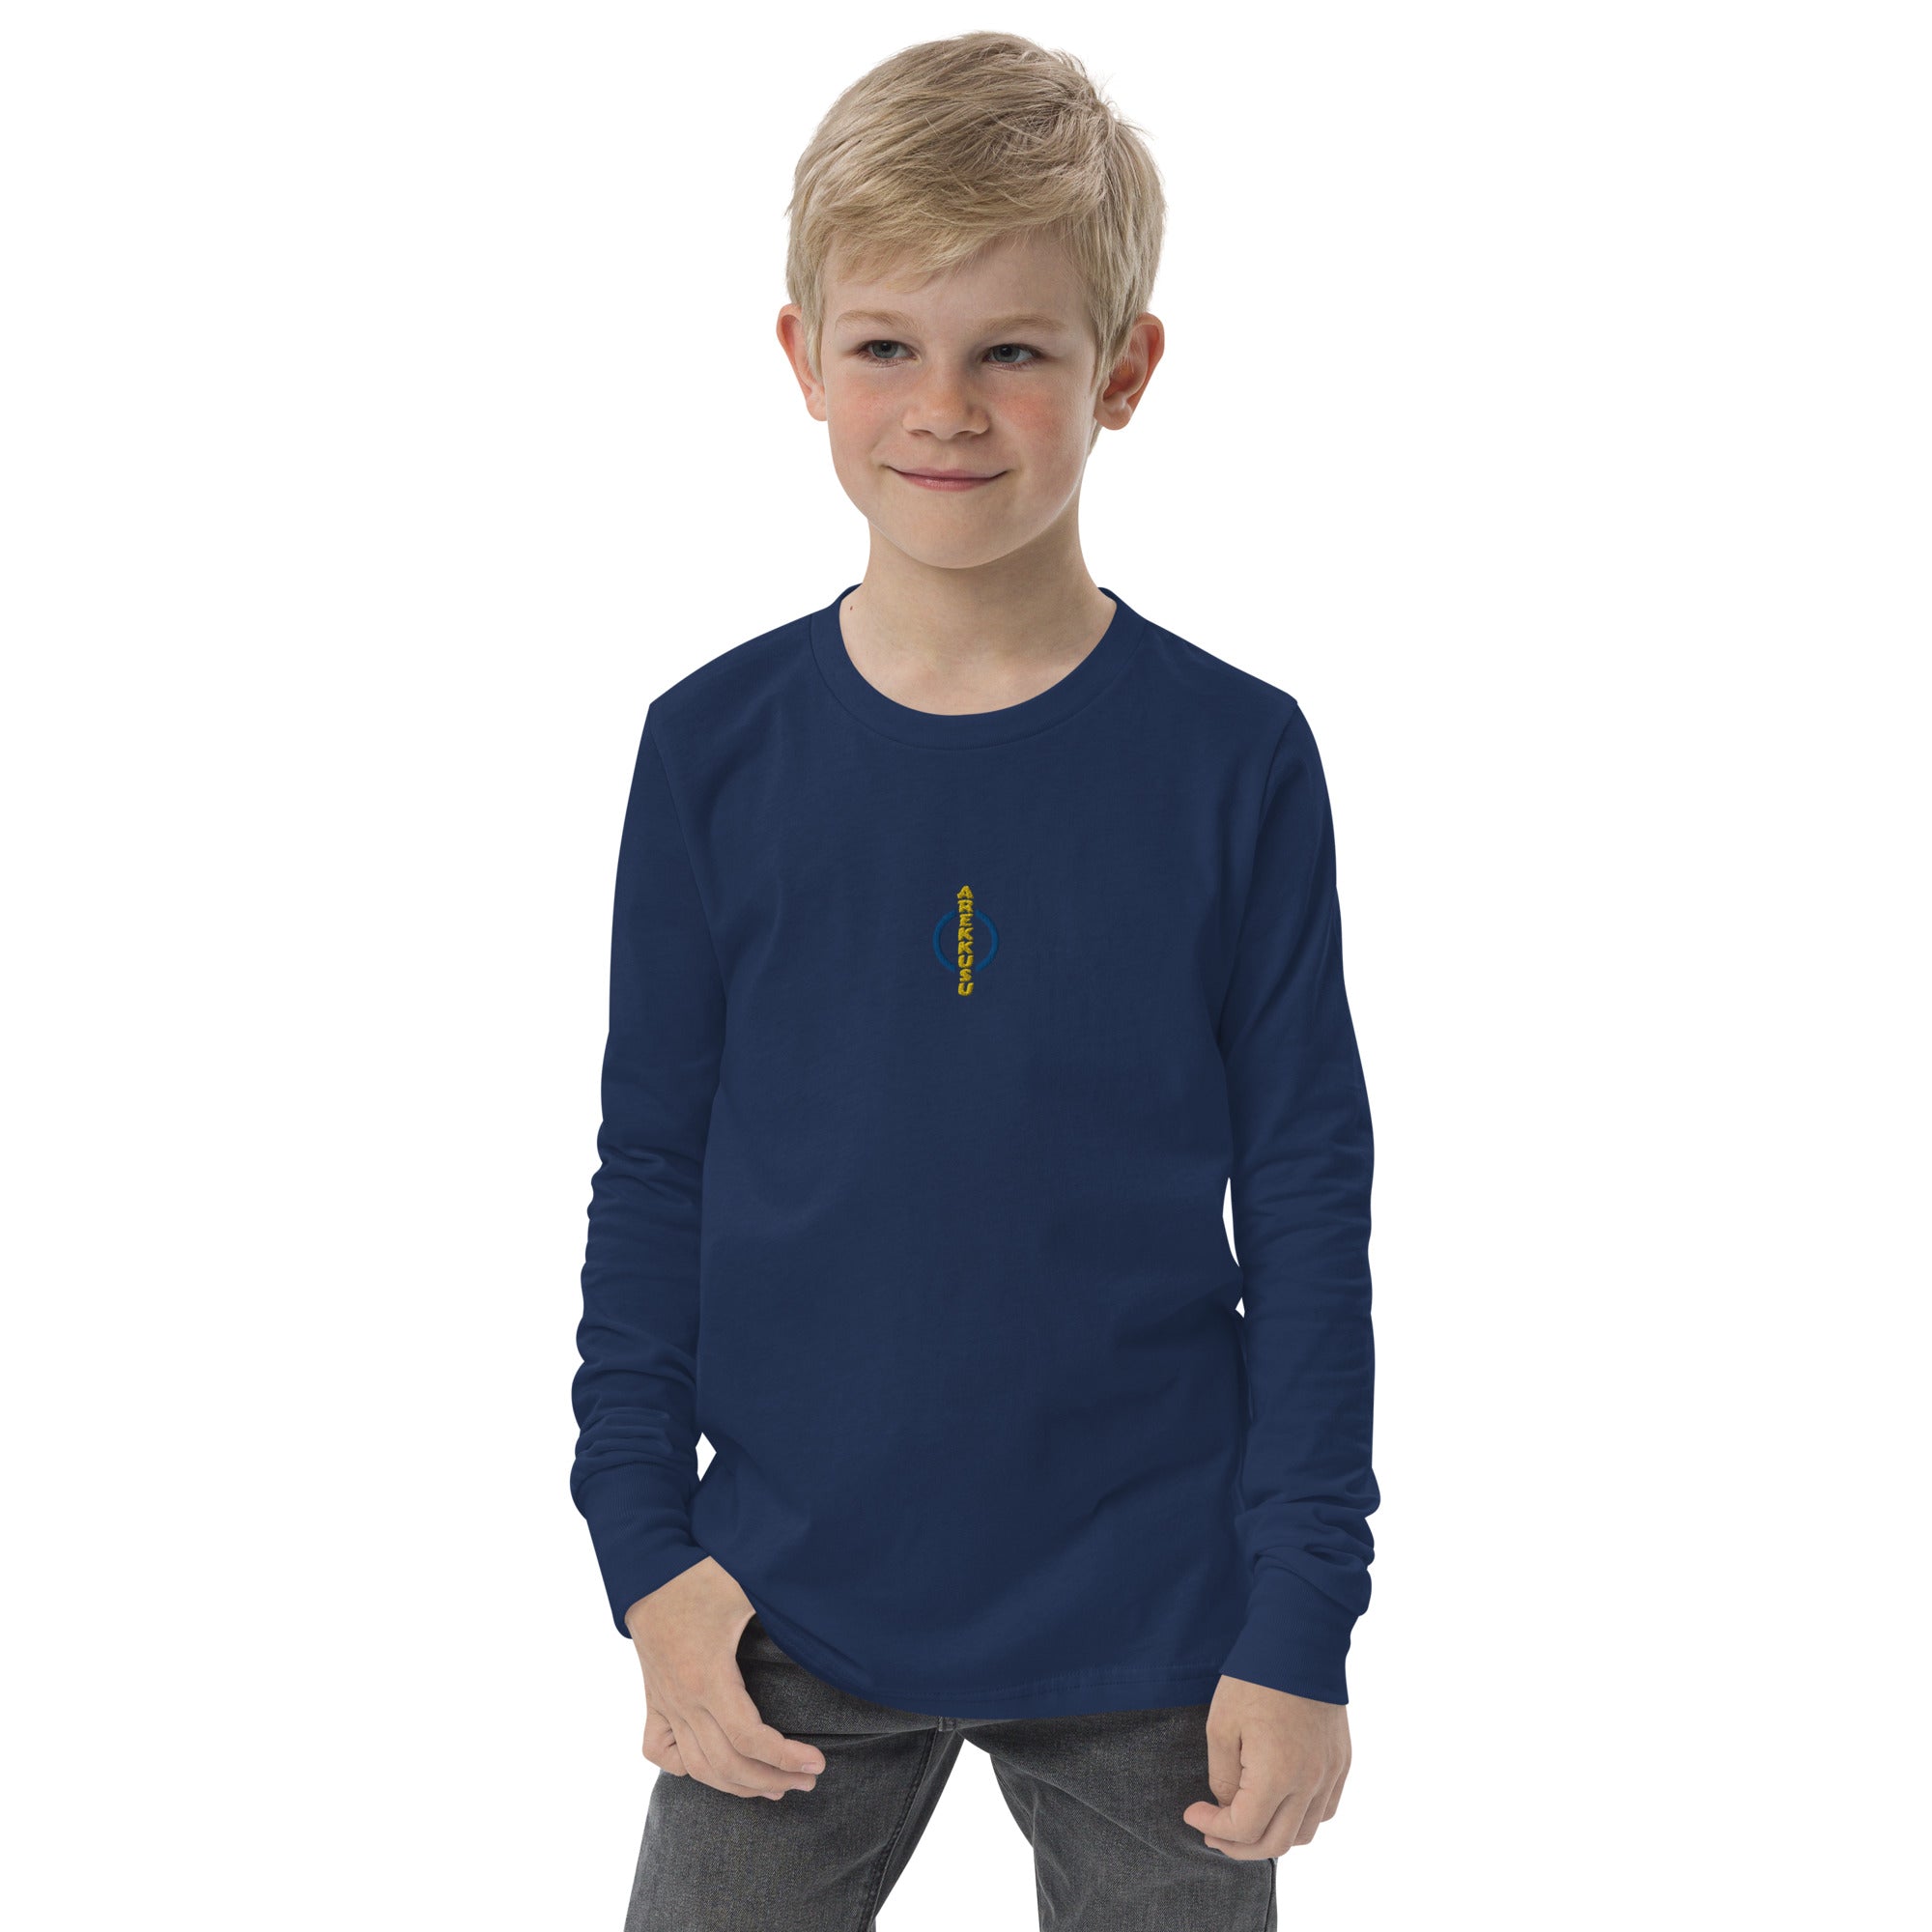 Unisex Youth Long Sleeve Shirt-12